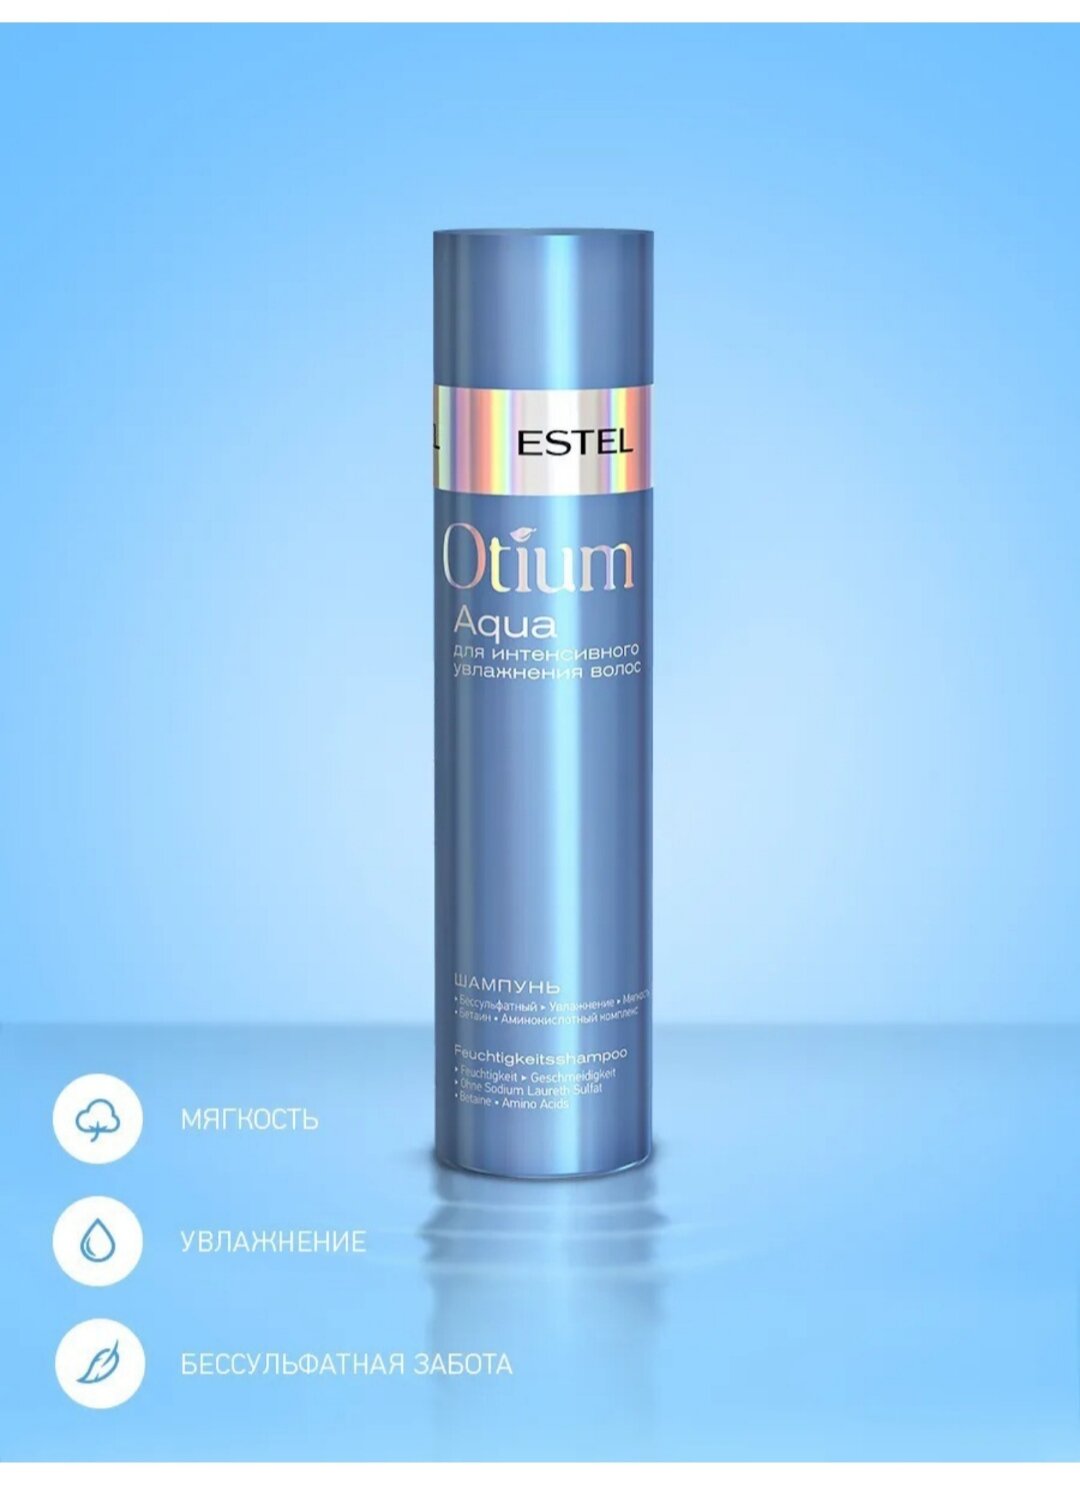 ESTEL шампунь Otium Aqua для интенсивного увлажнения волос, 250 мл